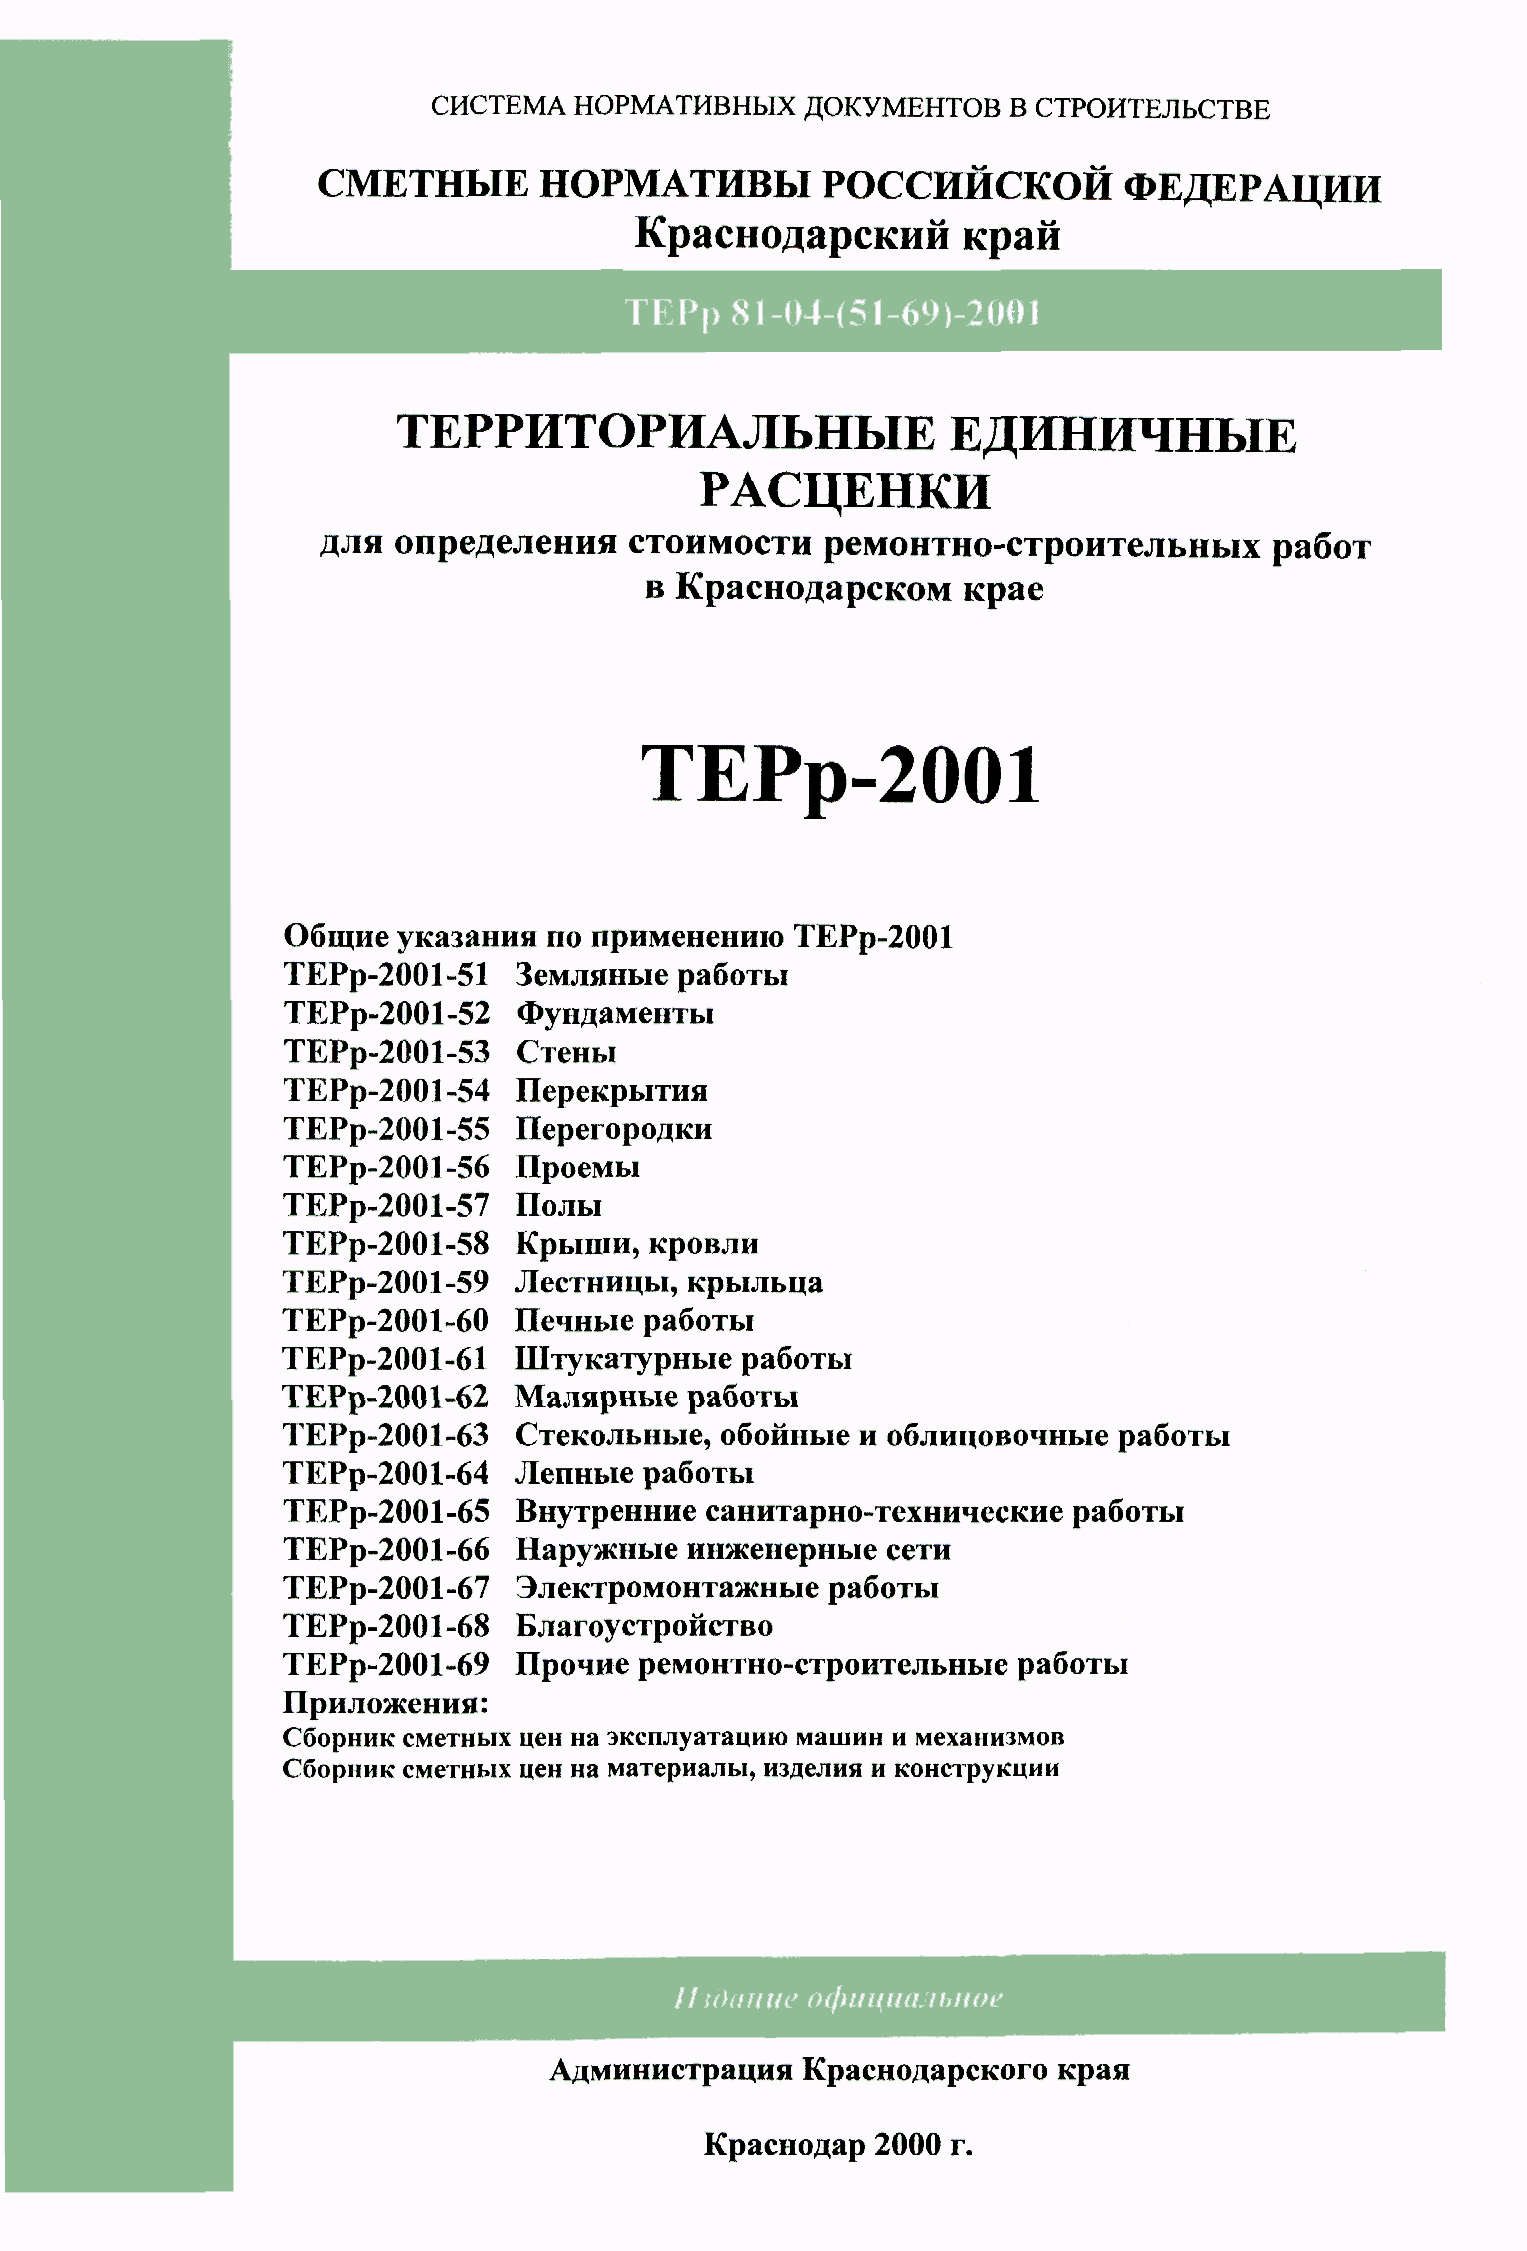 ТЕРр Краснодарского края 2001-64